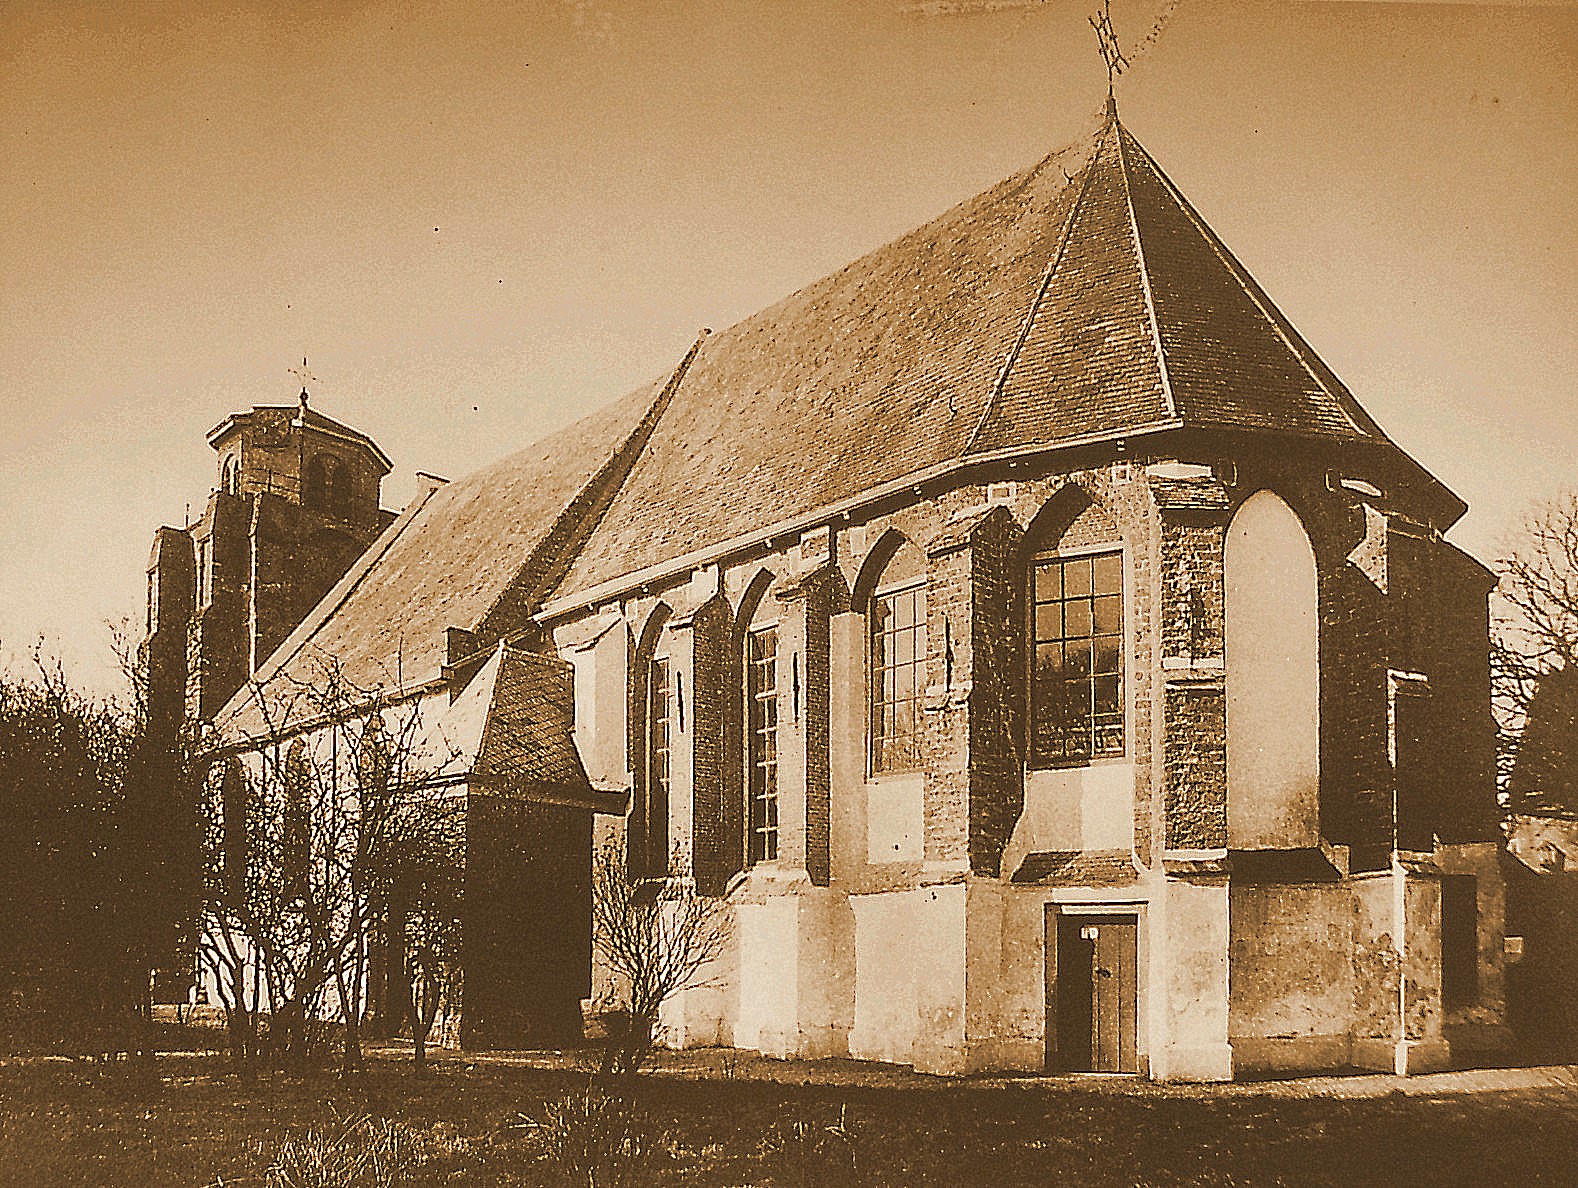  Kerk in het centrum van Ouddorp (gemeente Goedereede) 